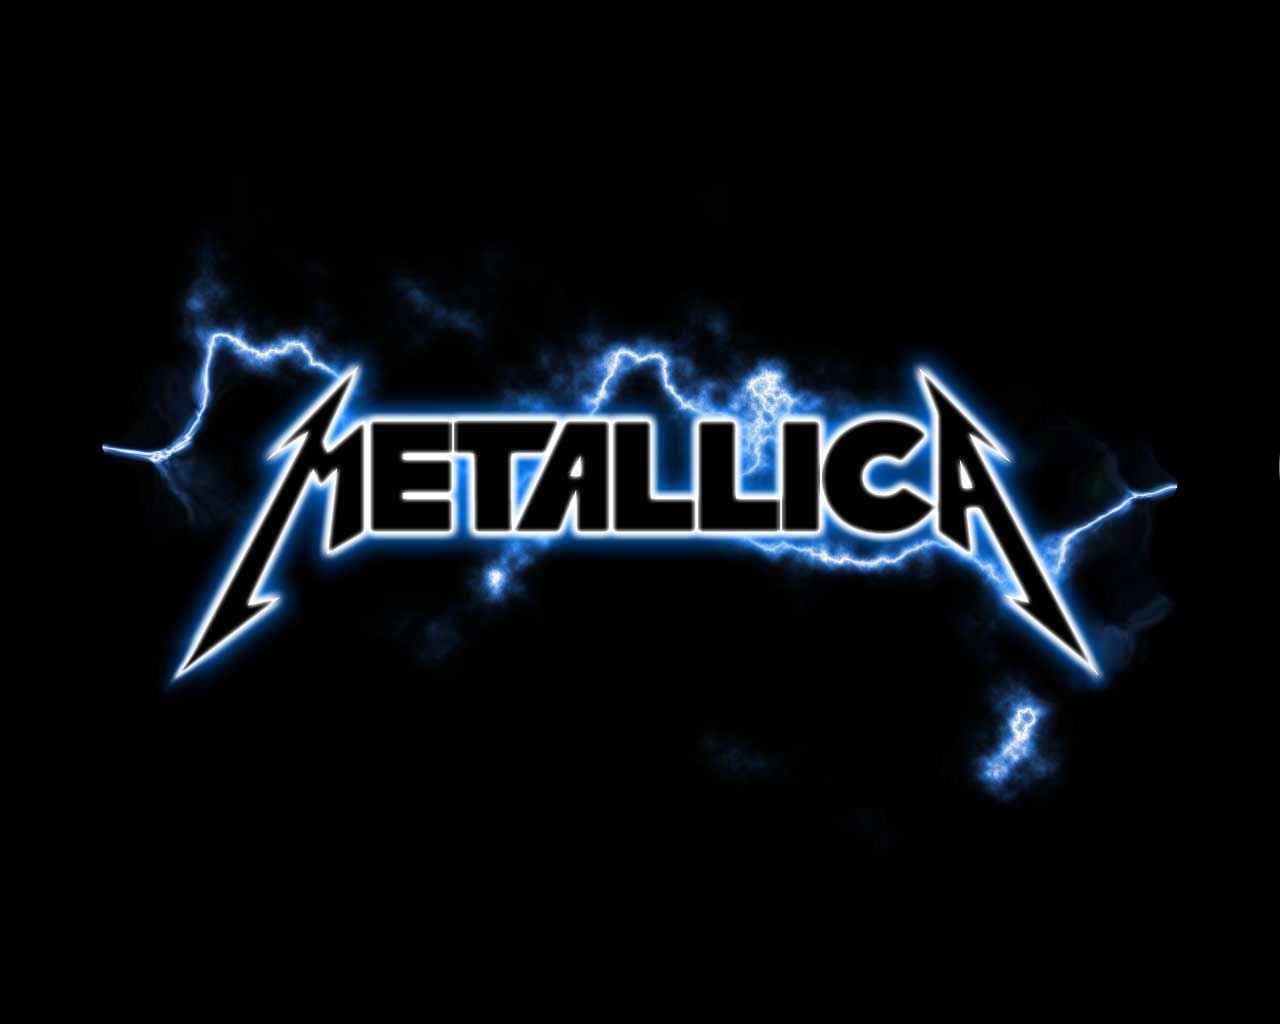 Metallica Wallpaper Hd